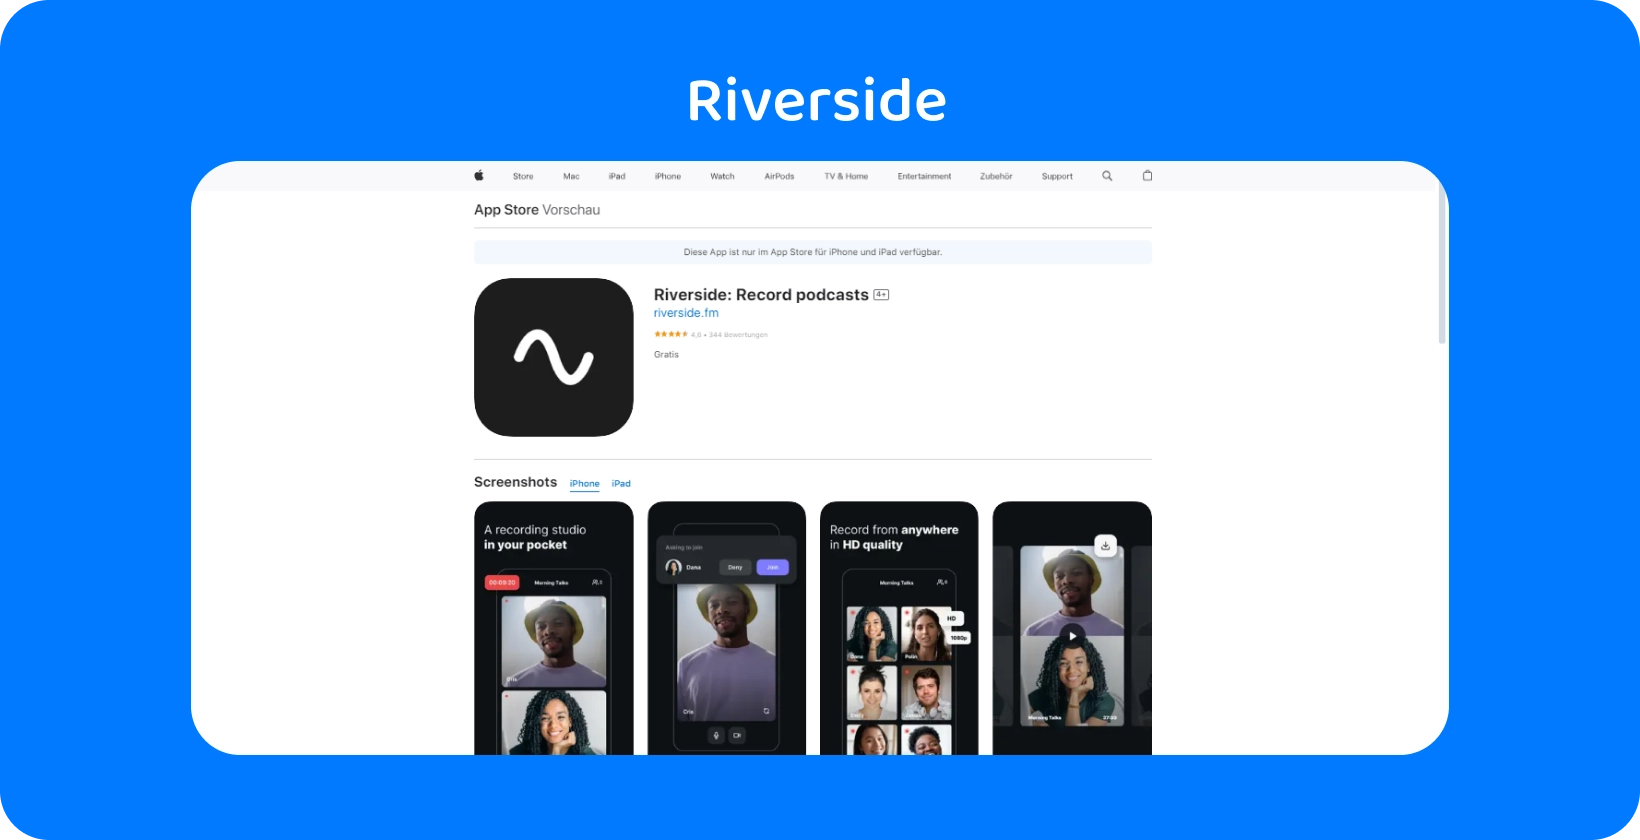 Riverside-appen på App Store visar verktyg för högkvalitativ podcastinspelning och fjärrintervjuer.